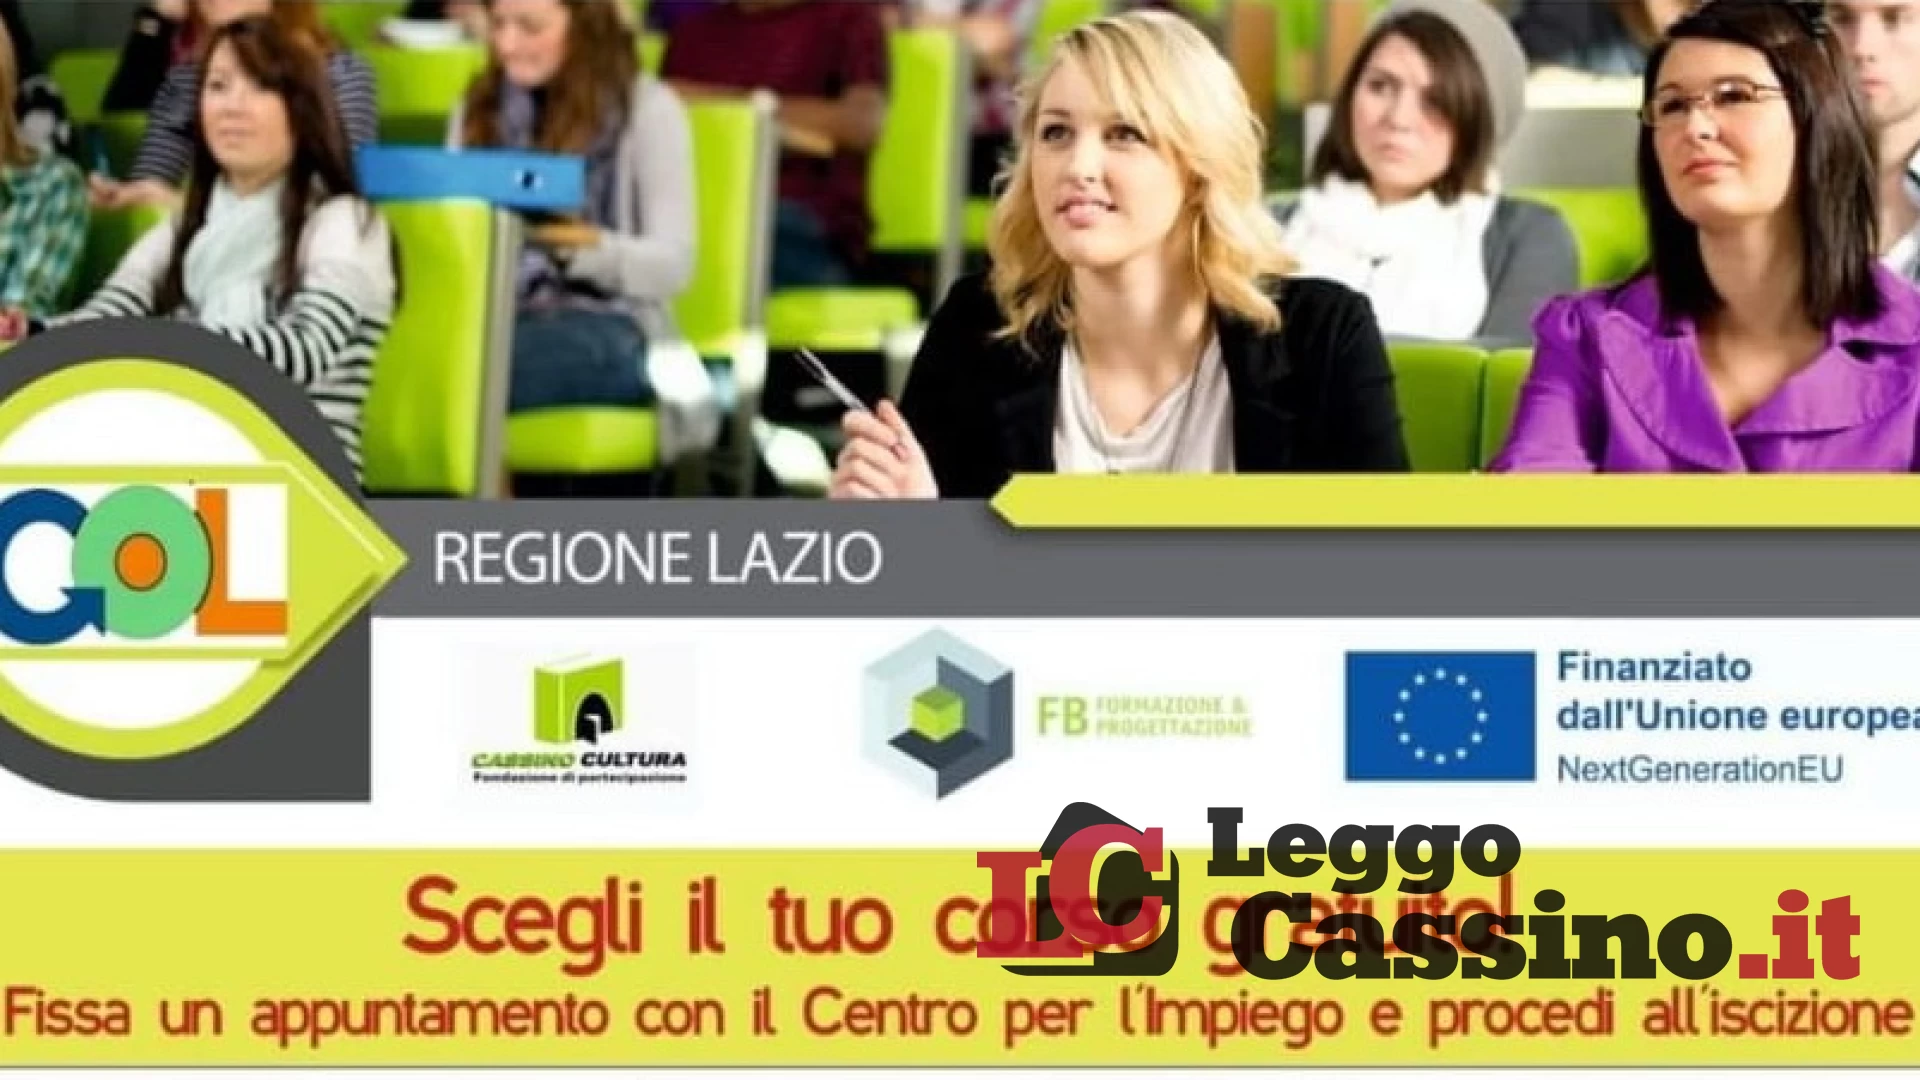 La Regione Lazio ha finanziato 15 corsi di formazione, tutti gratuiti